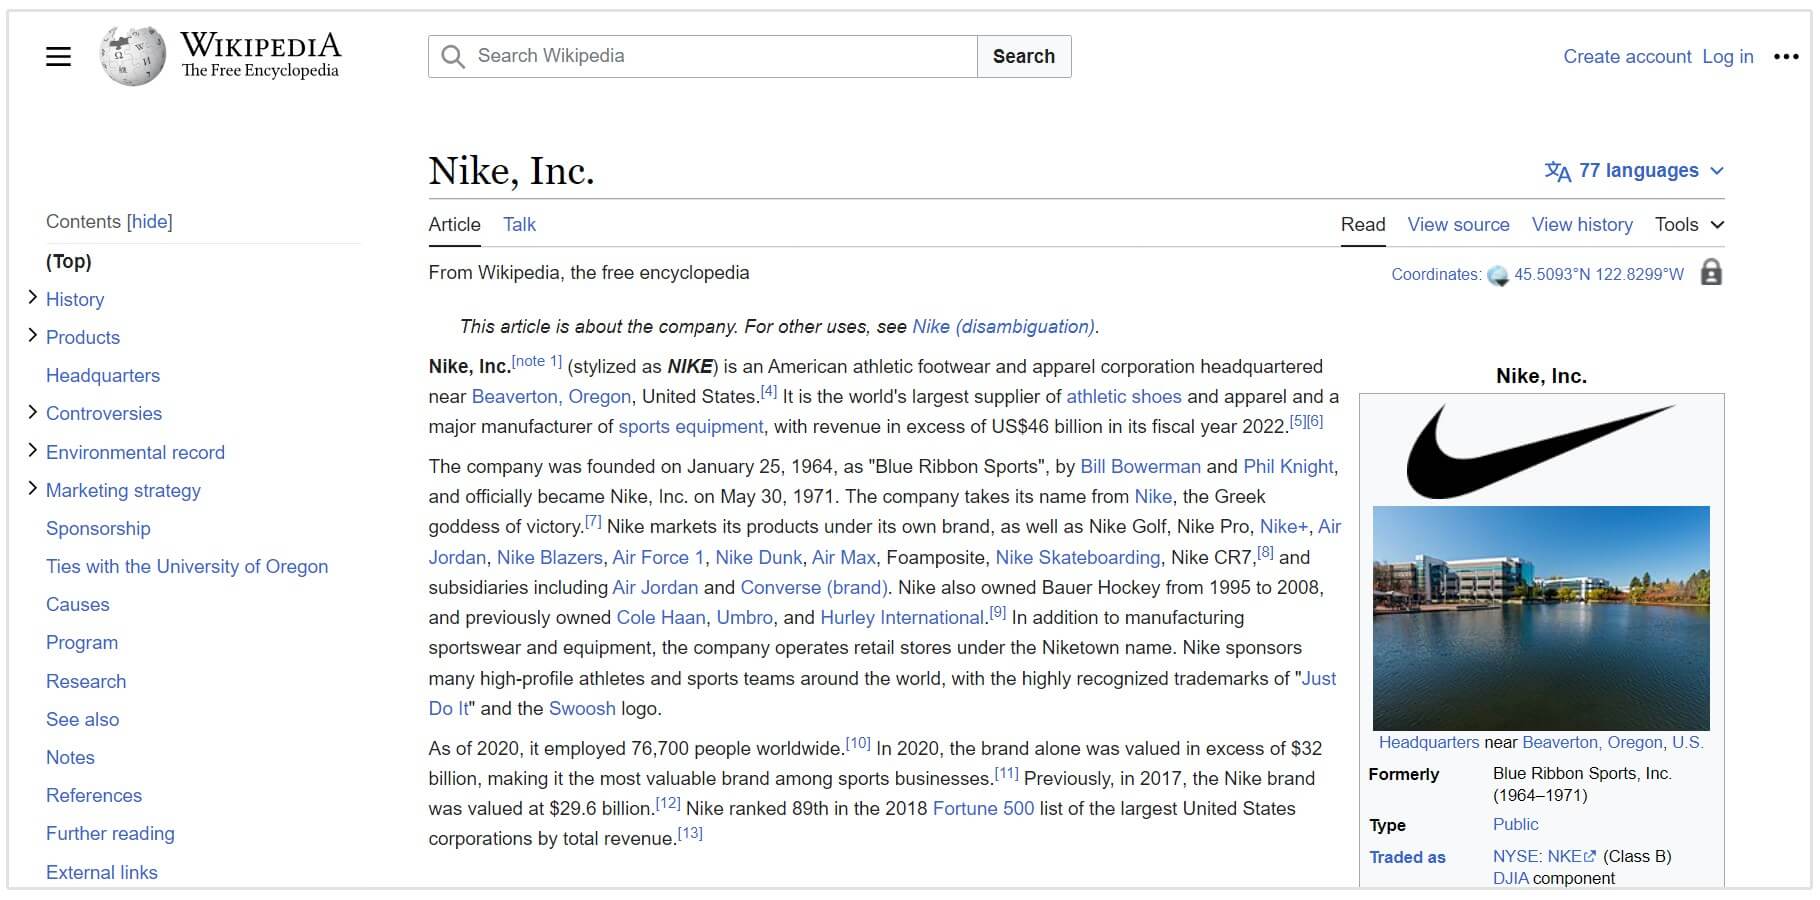 nike wikipedia page